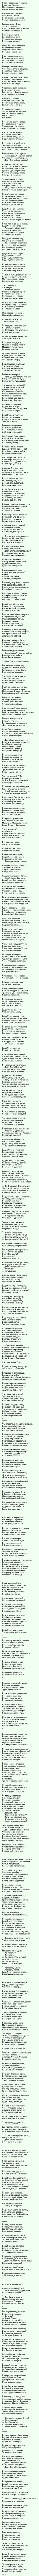 Читать бесплатно стихи Сергея Михалкова - Дядя Степа